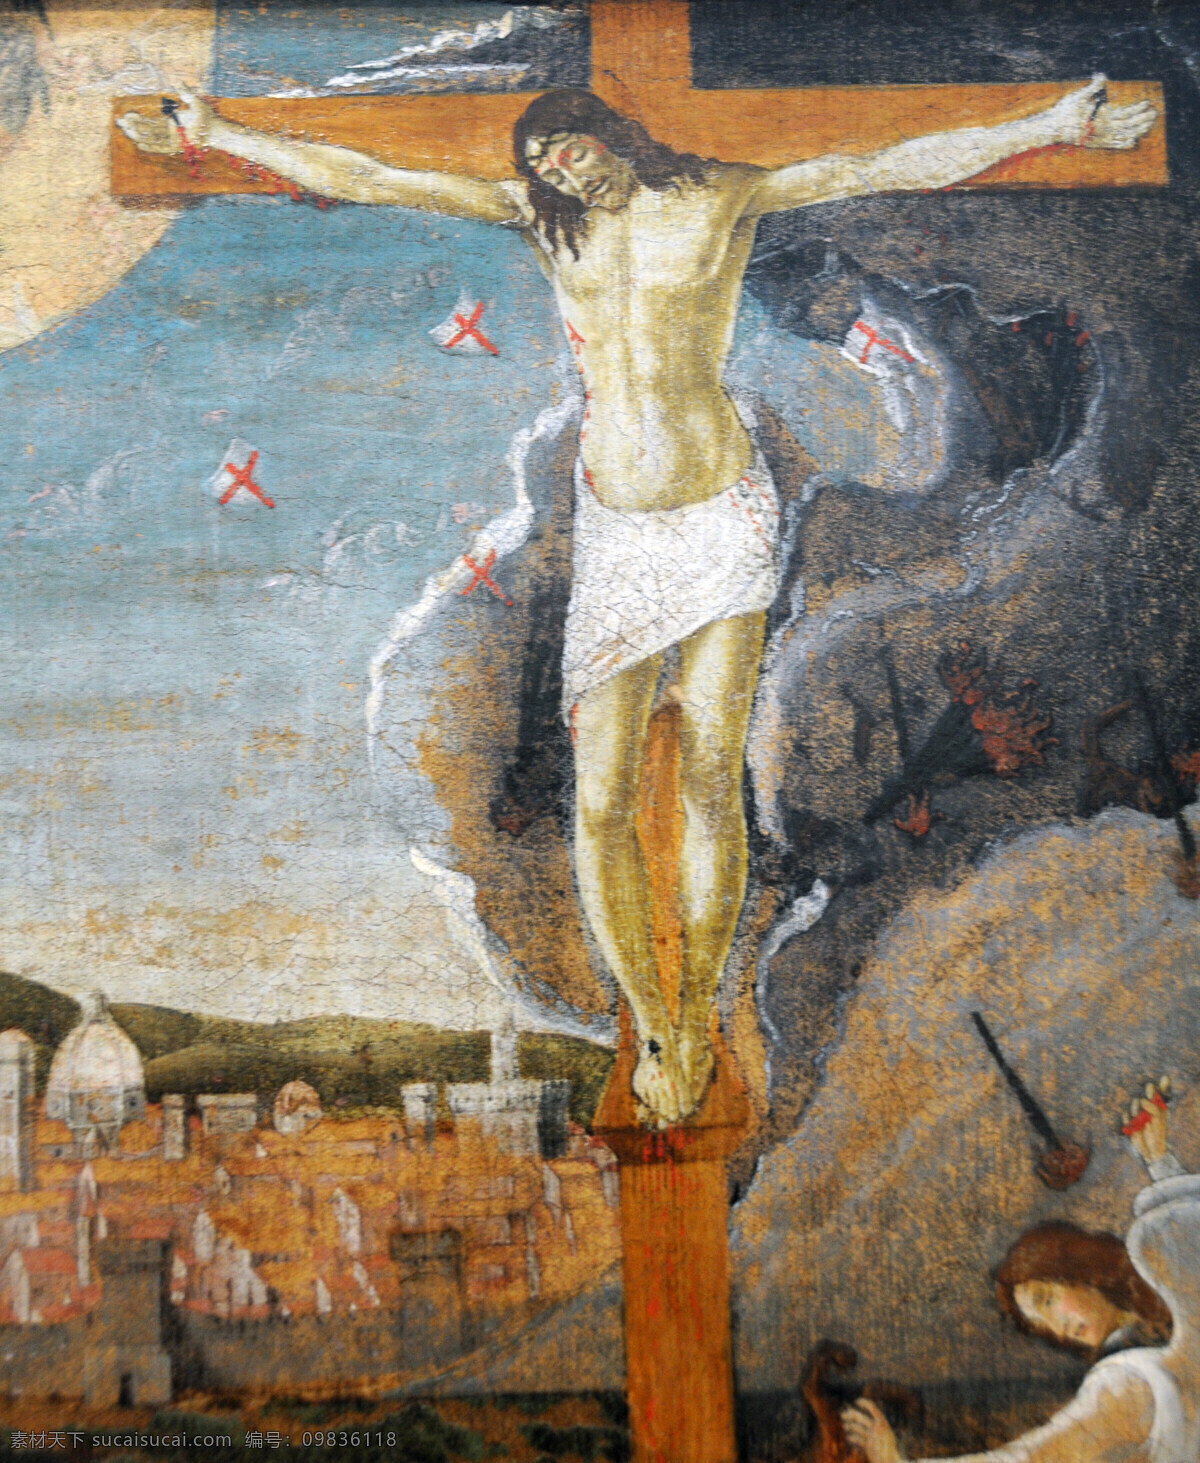 耶稣 受难 绘画书法 世界名画 文化艺术 油画 耶稣受难 桑德 罗波 提 切利 家居装饰素材